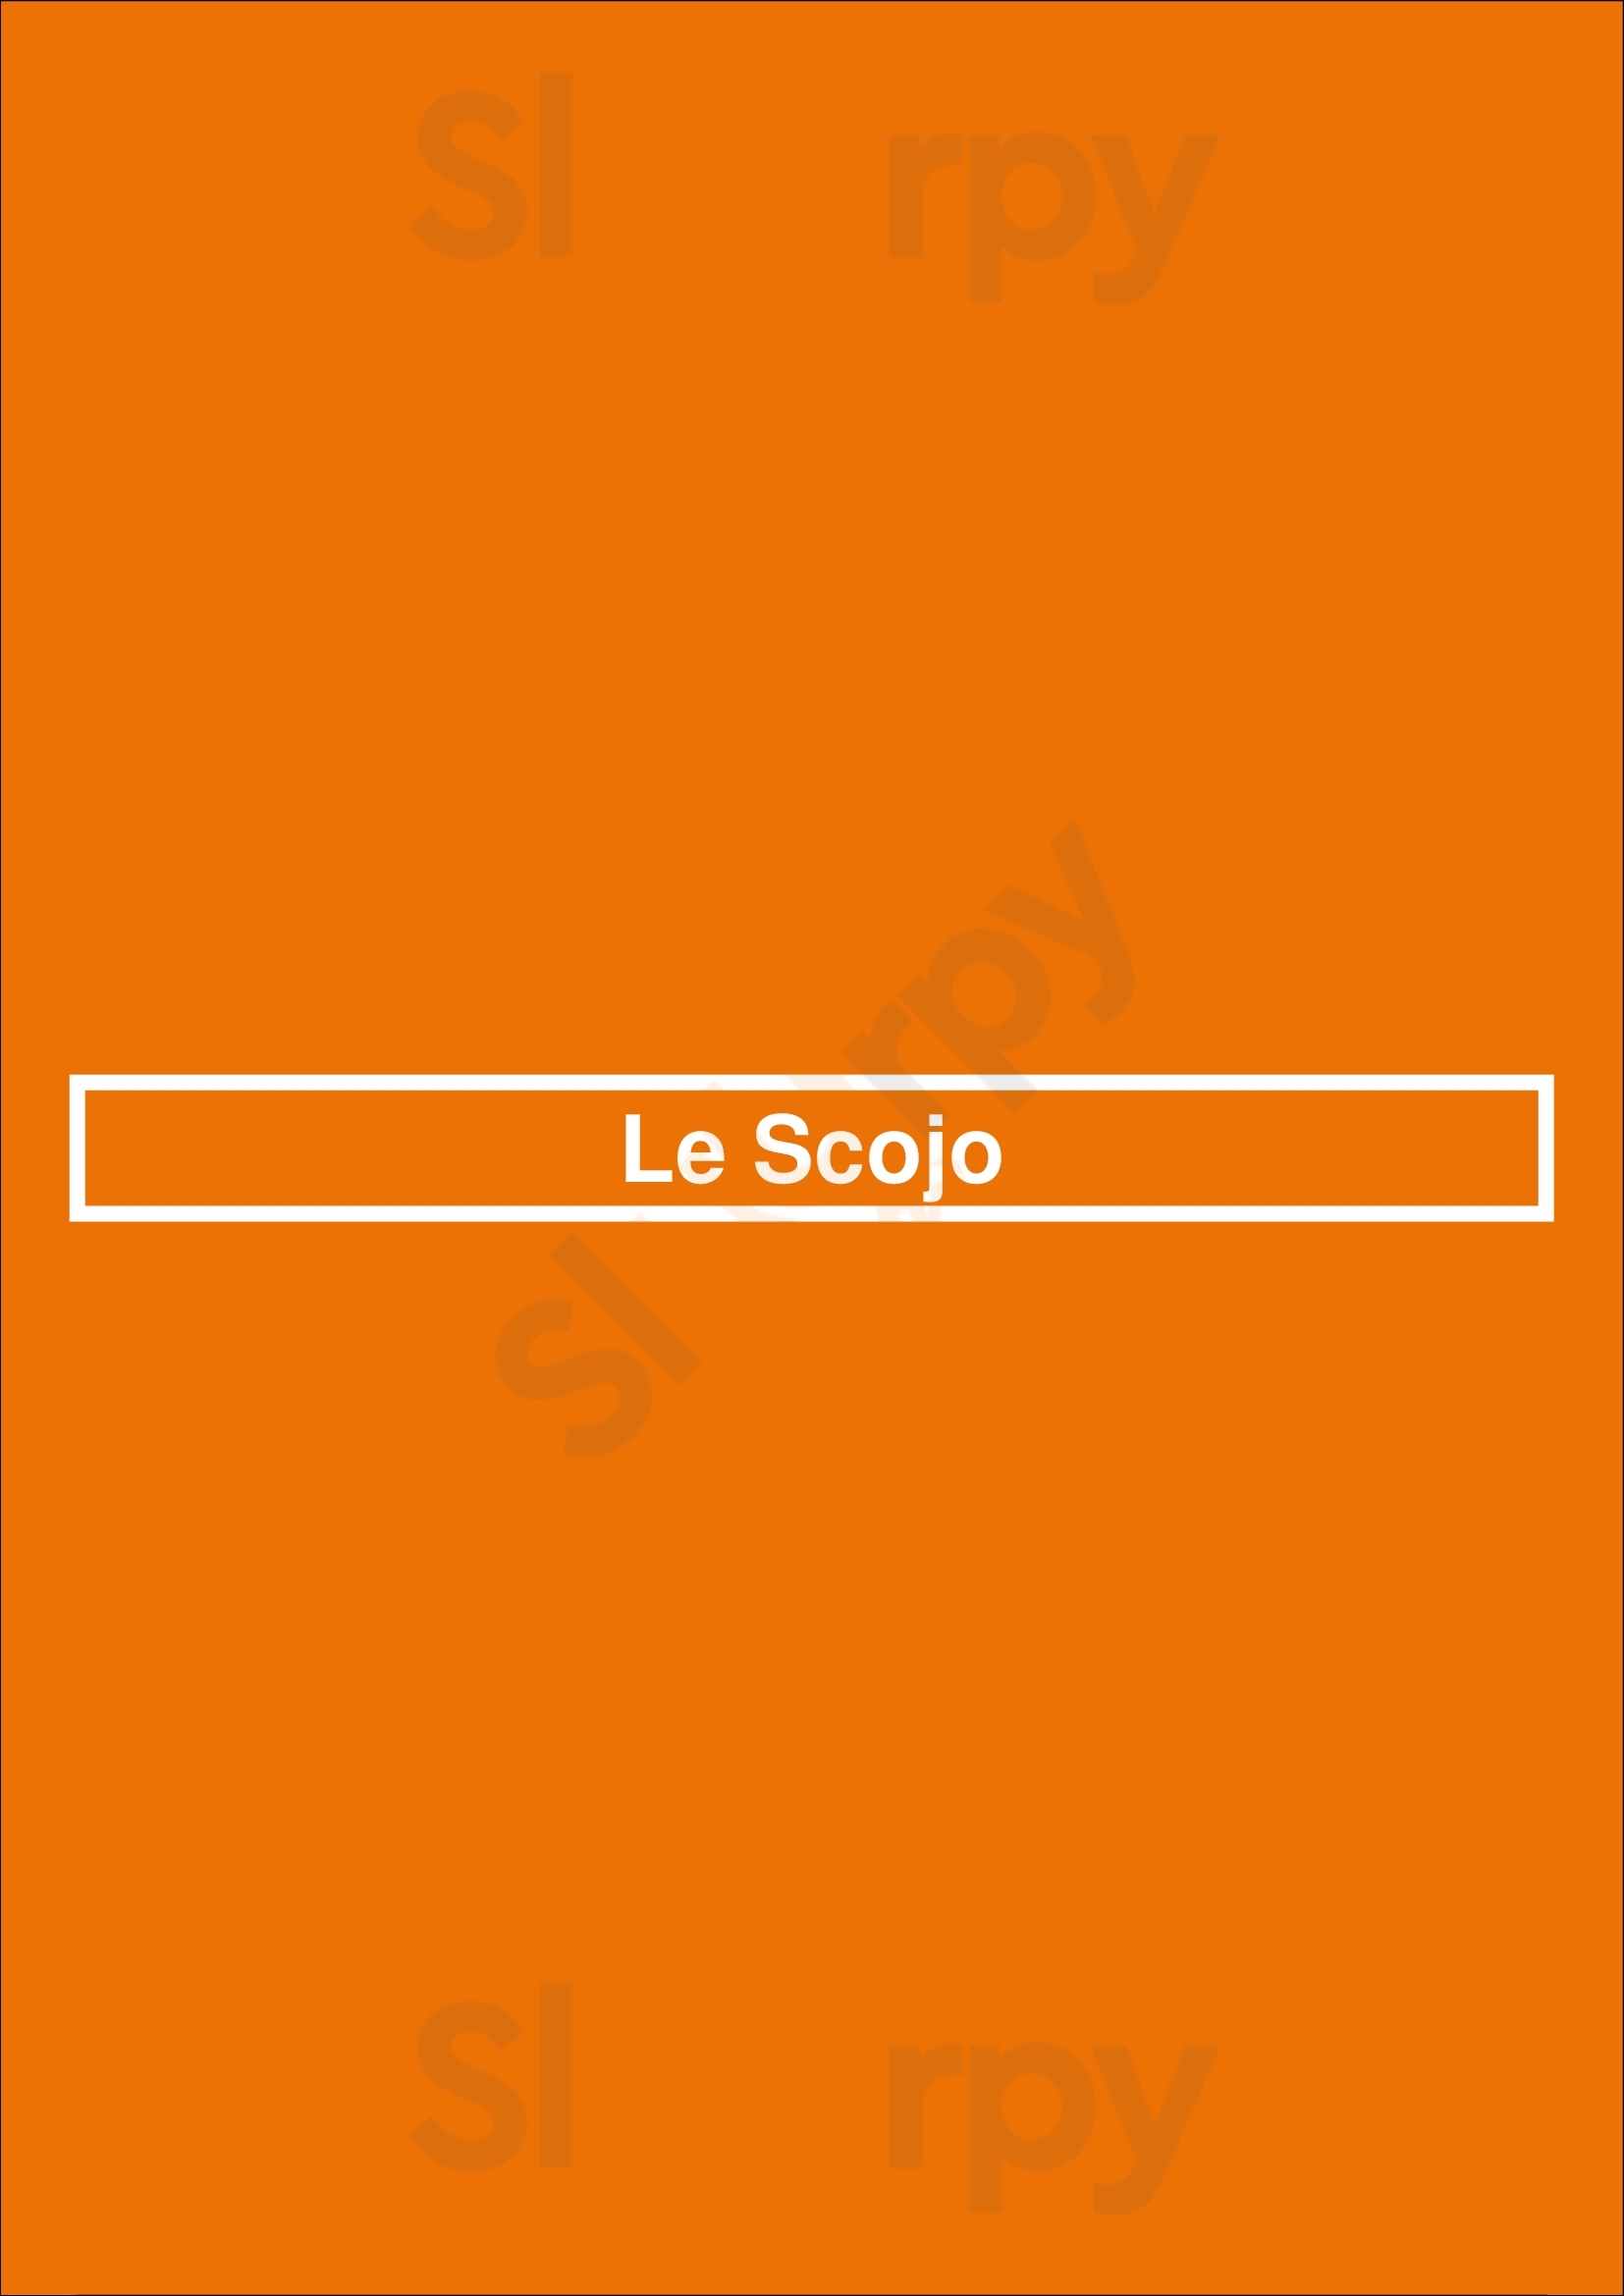 Le Scojo Lyon Menu - 1